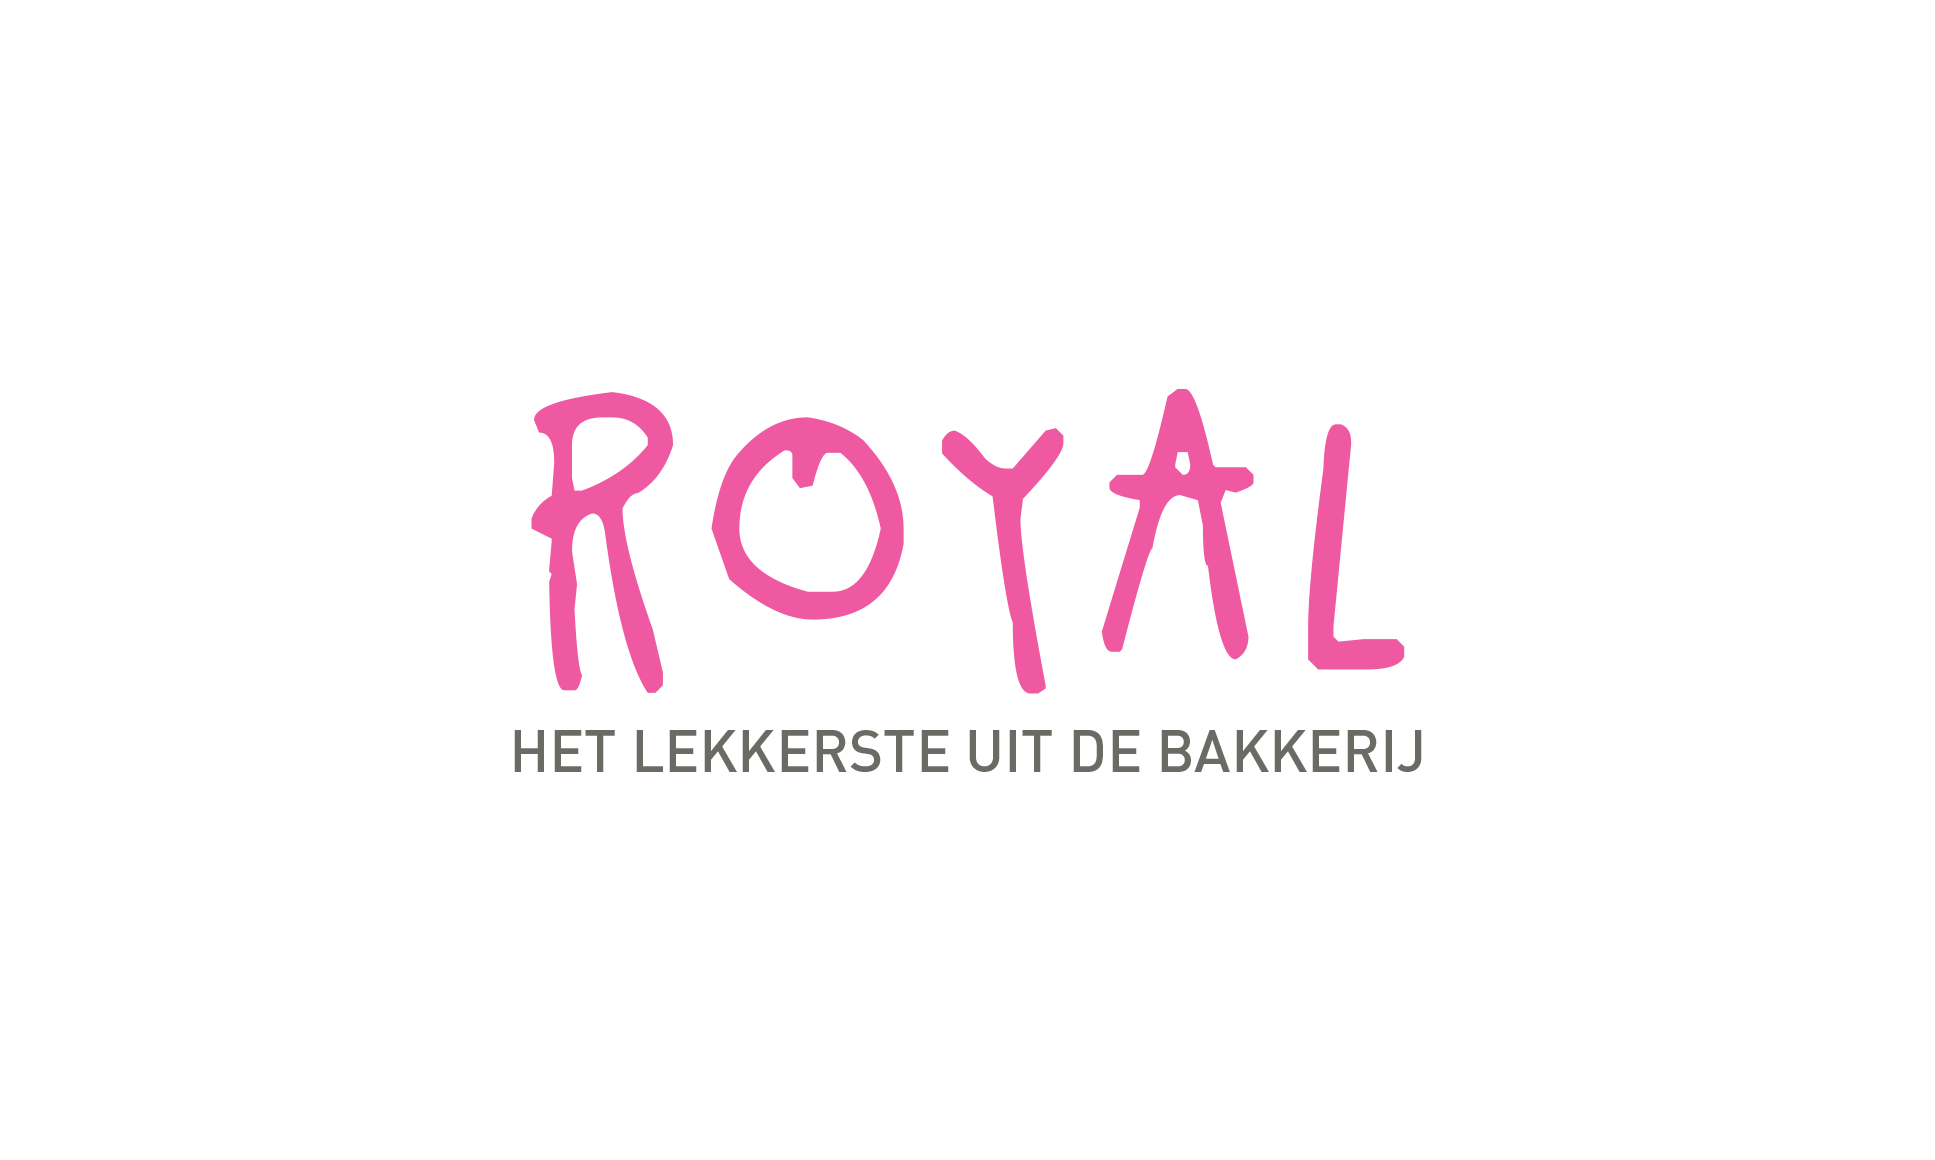 Bakkerij Royal